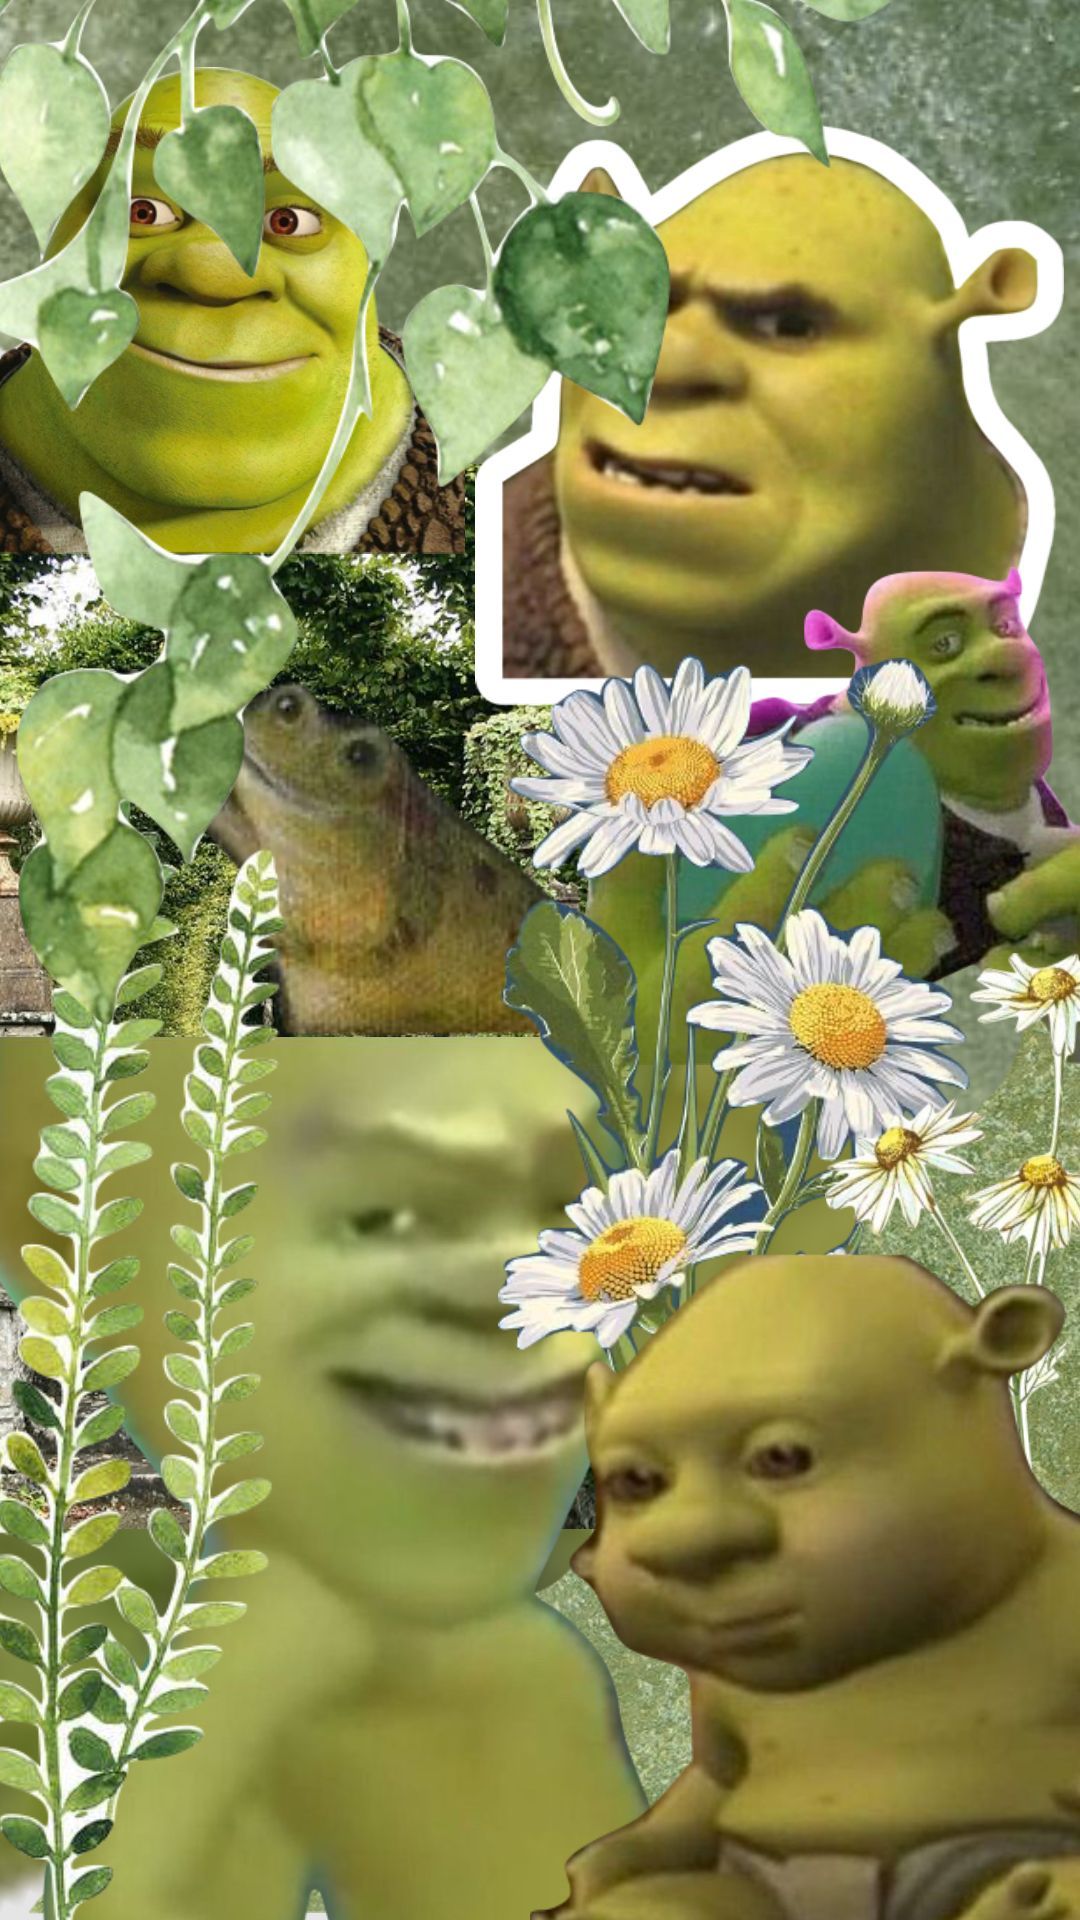 Shrek wallpaper I made for my phone! - Shrek